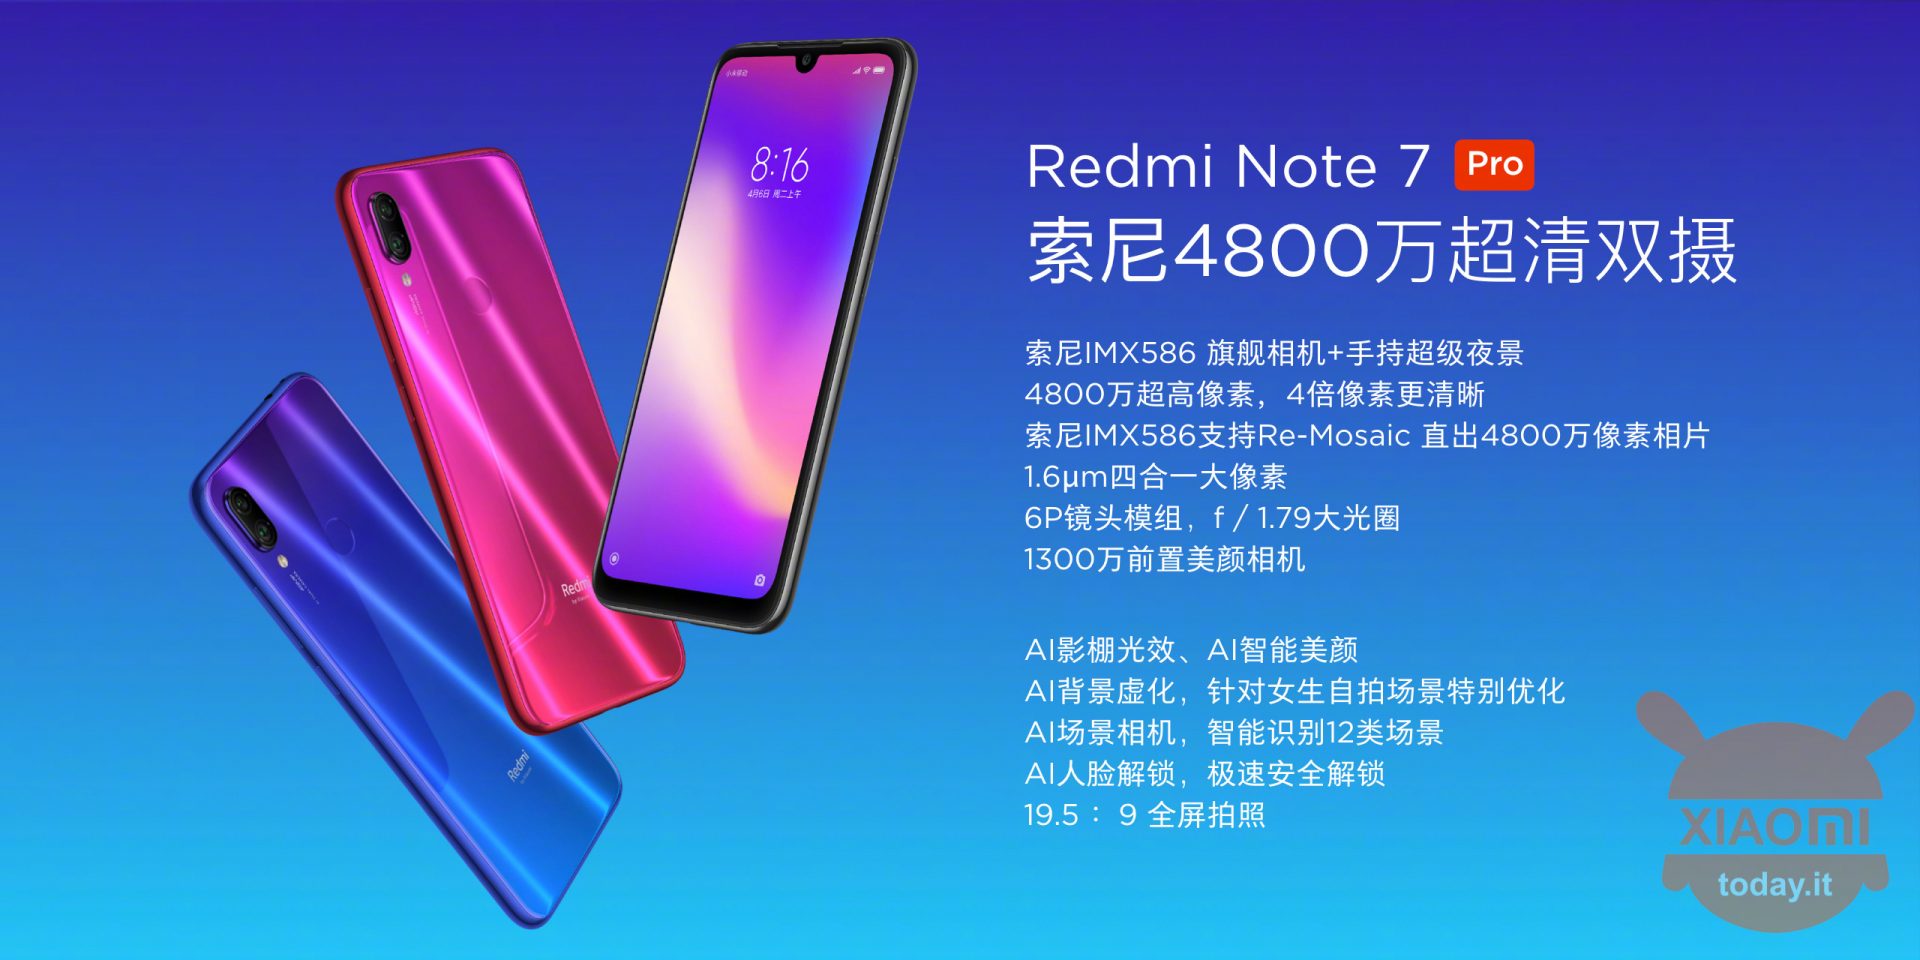 Xiaomi Redmi Note 7 Pro diluncurkan